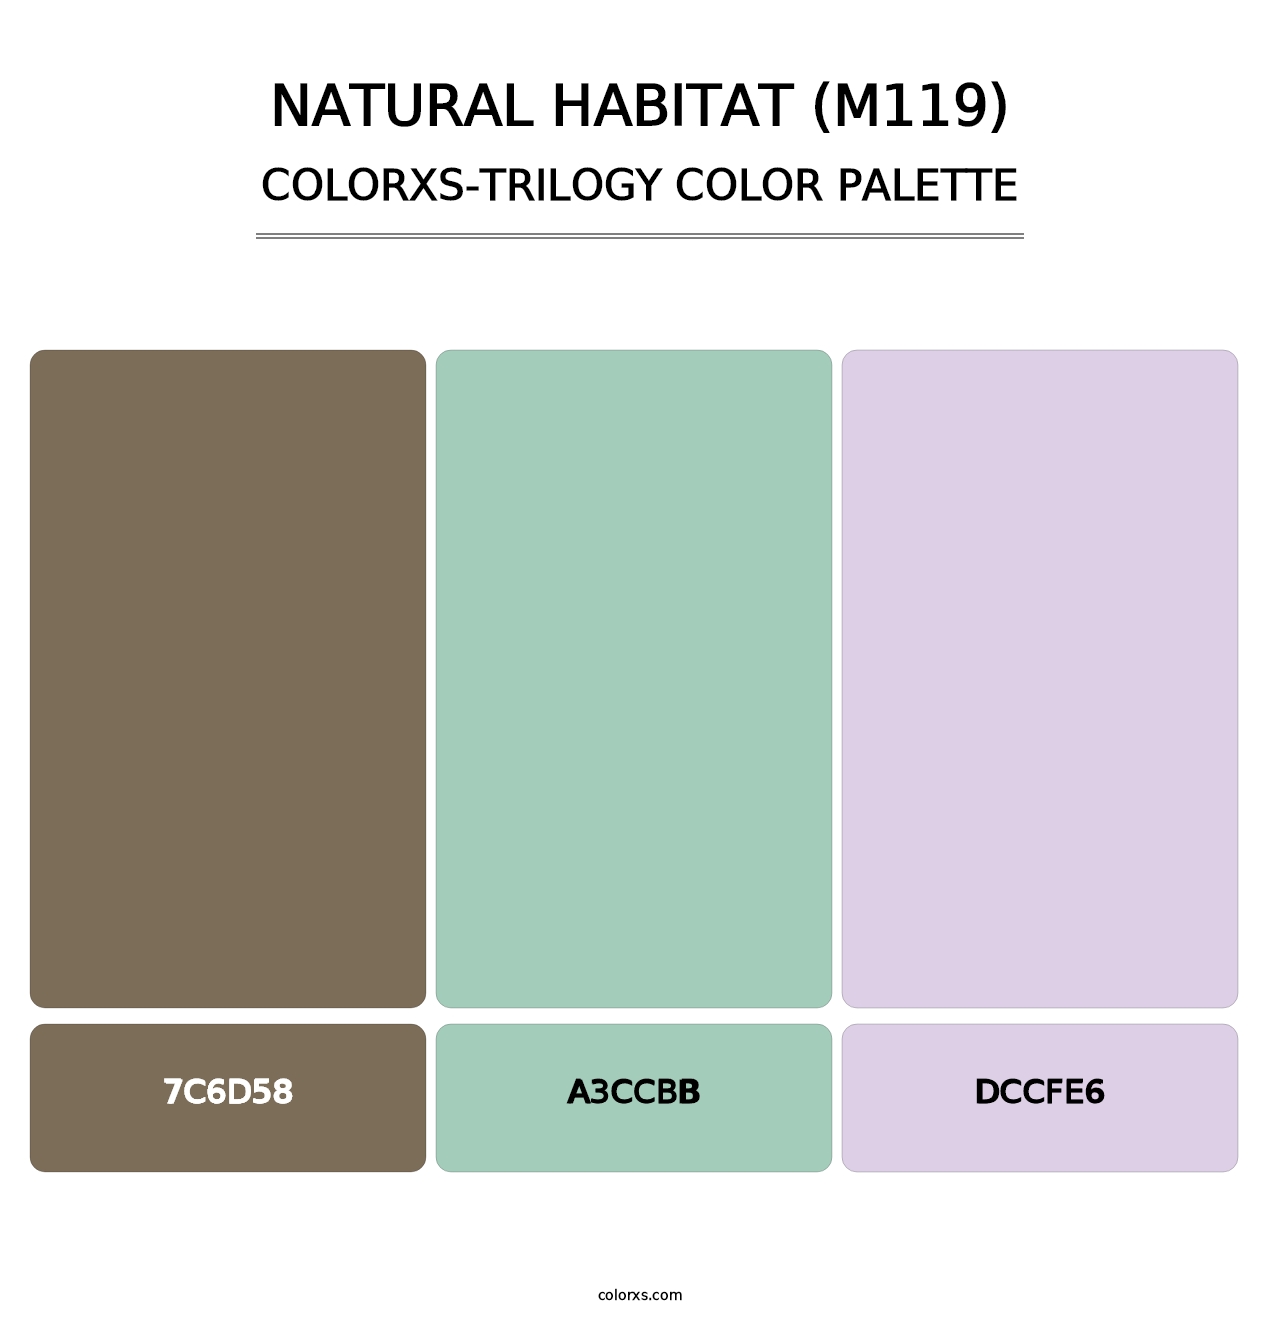 Natural Habitat (M119) - Colorxs Trilogy Palette